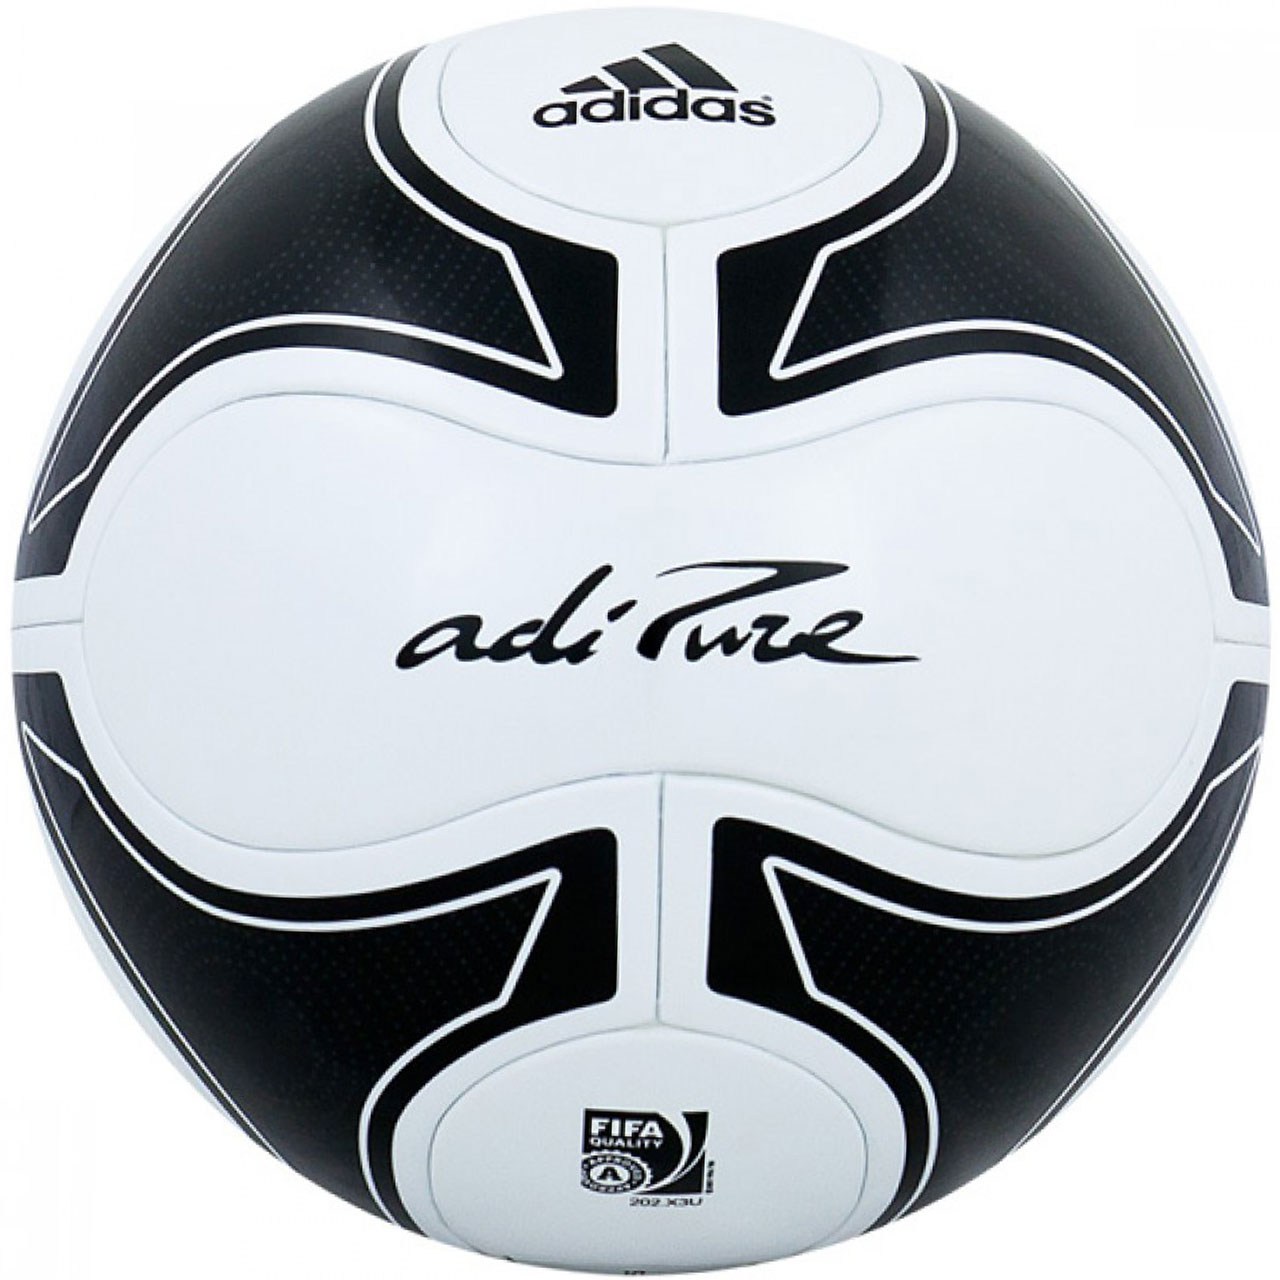 توپ فوتبال آدیداس مدل AdiPure 20توپ فوتبال آدیداس مدل AdiPure 201111